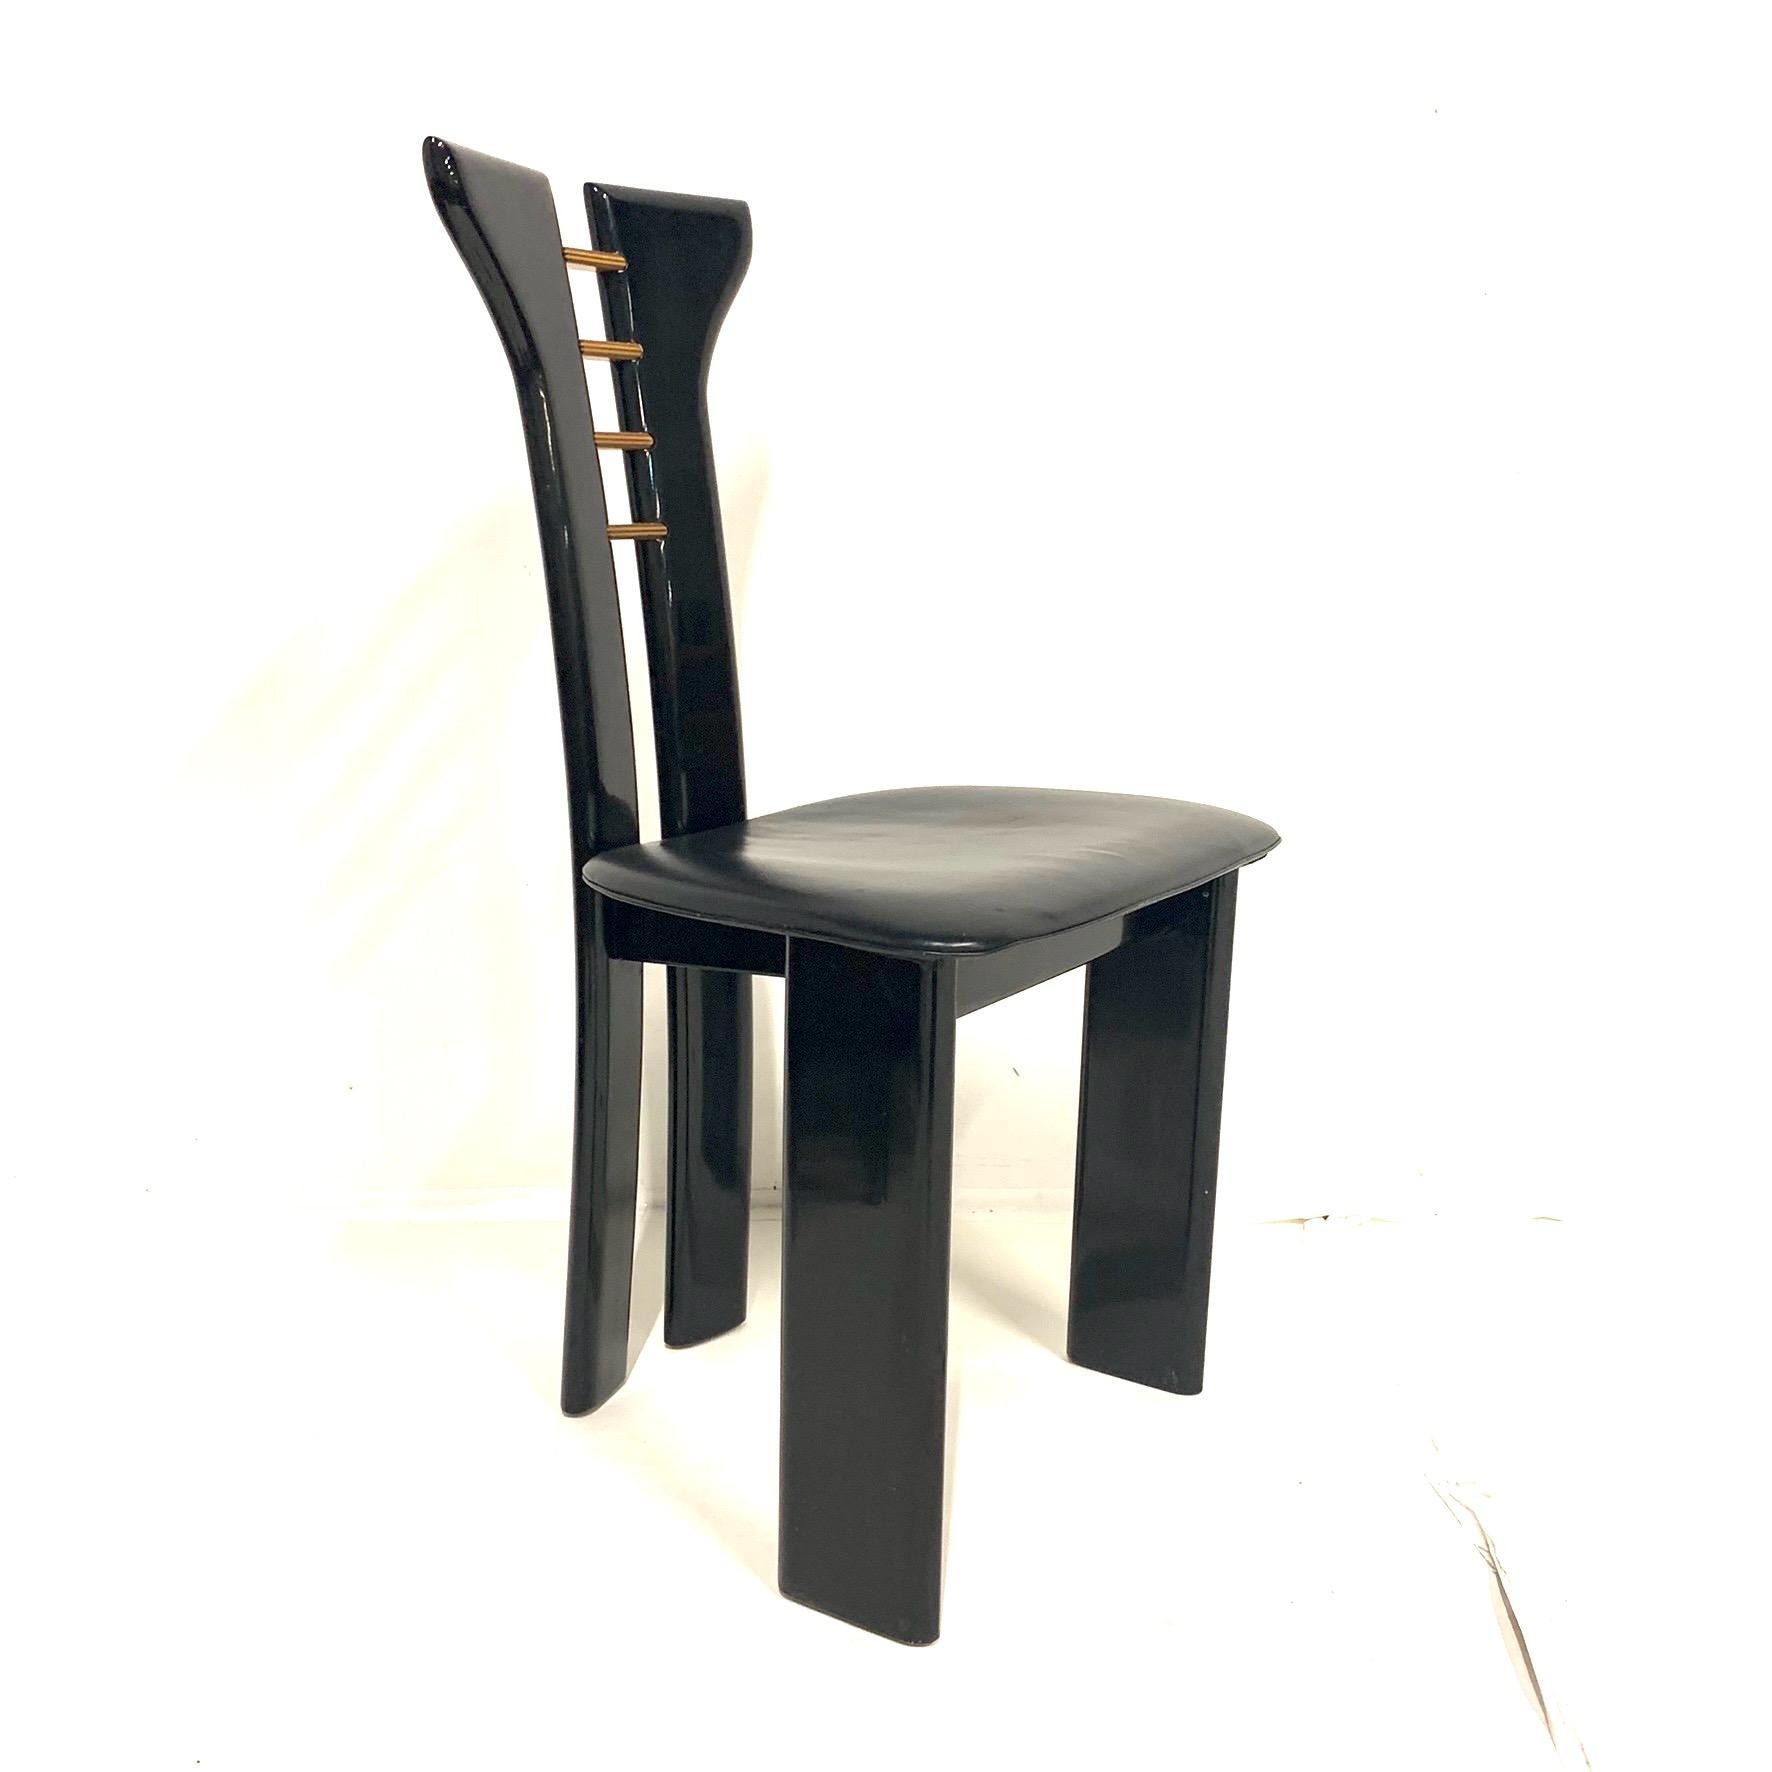 Satz von 4 skulpturalen 1970er Pierre Cardin Stühlen in schwarzem Lack mit Ledersitzen (Lackiert)